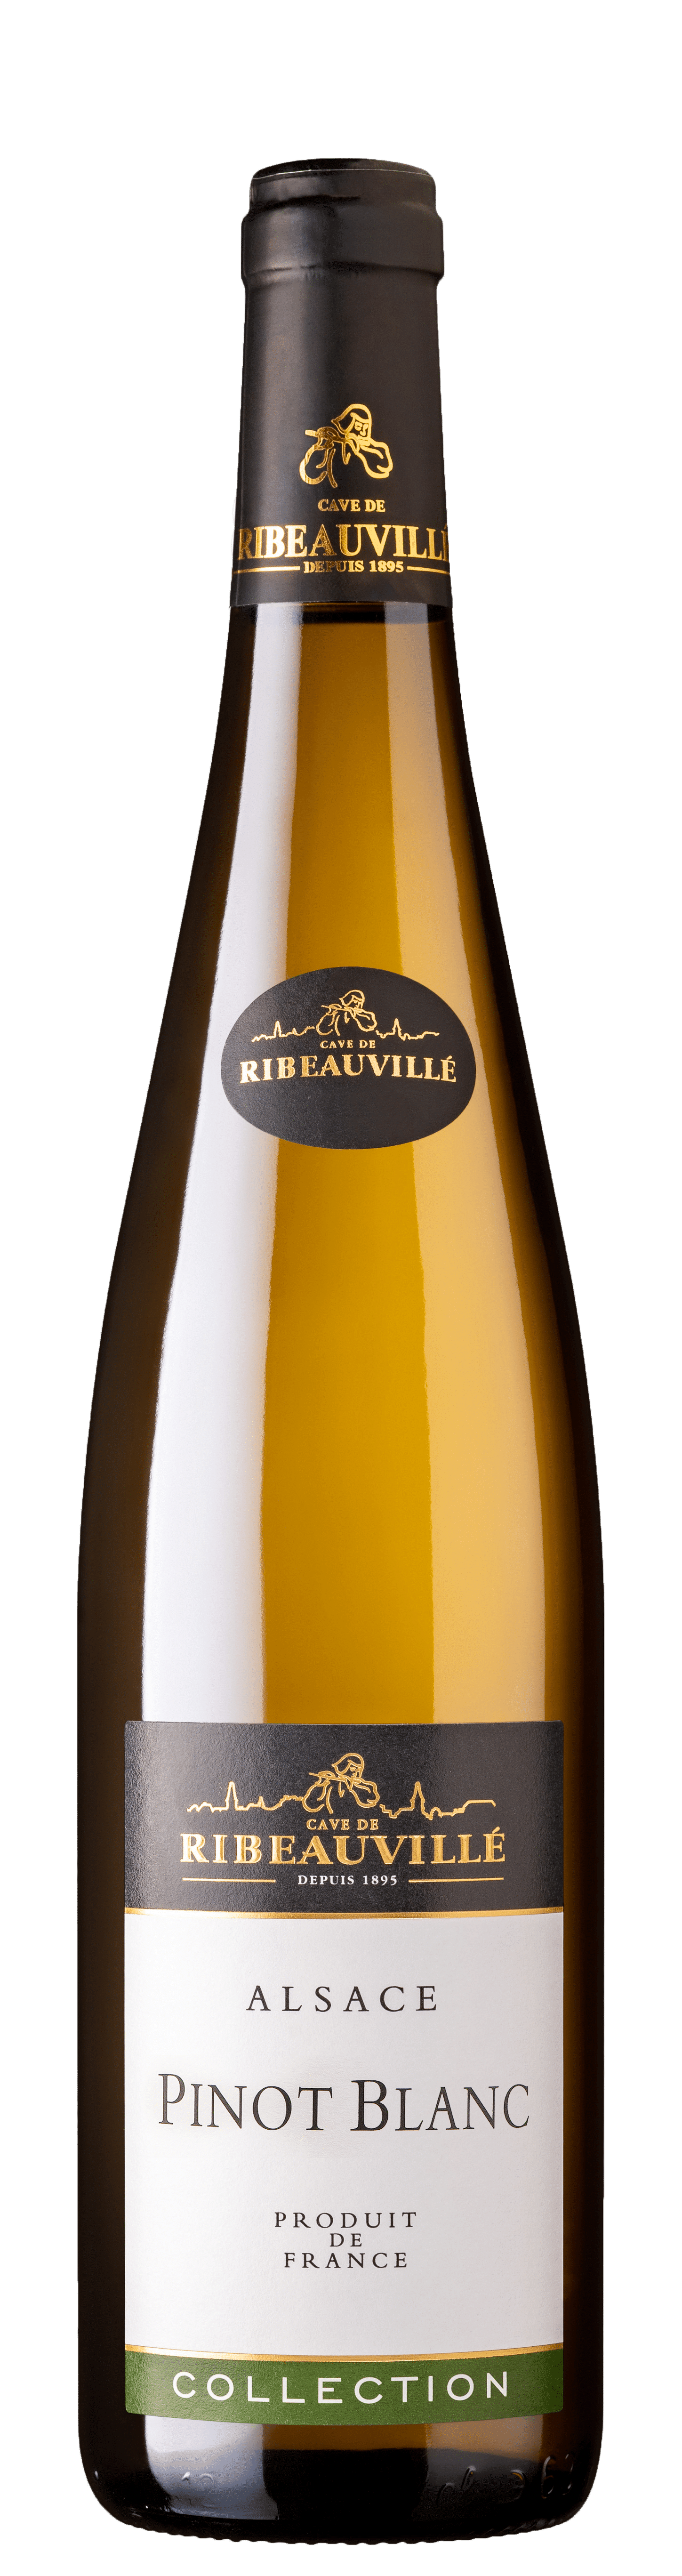 Bouteille de Pinot Blanc Collection Cave de Ribeauvillé